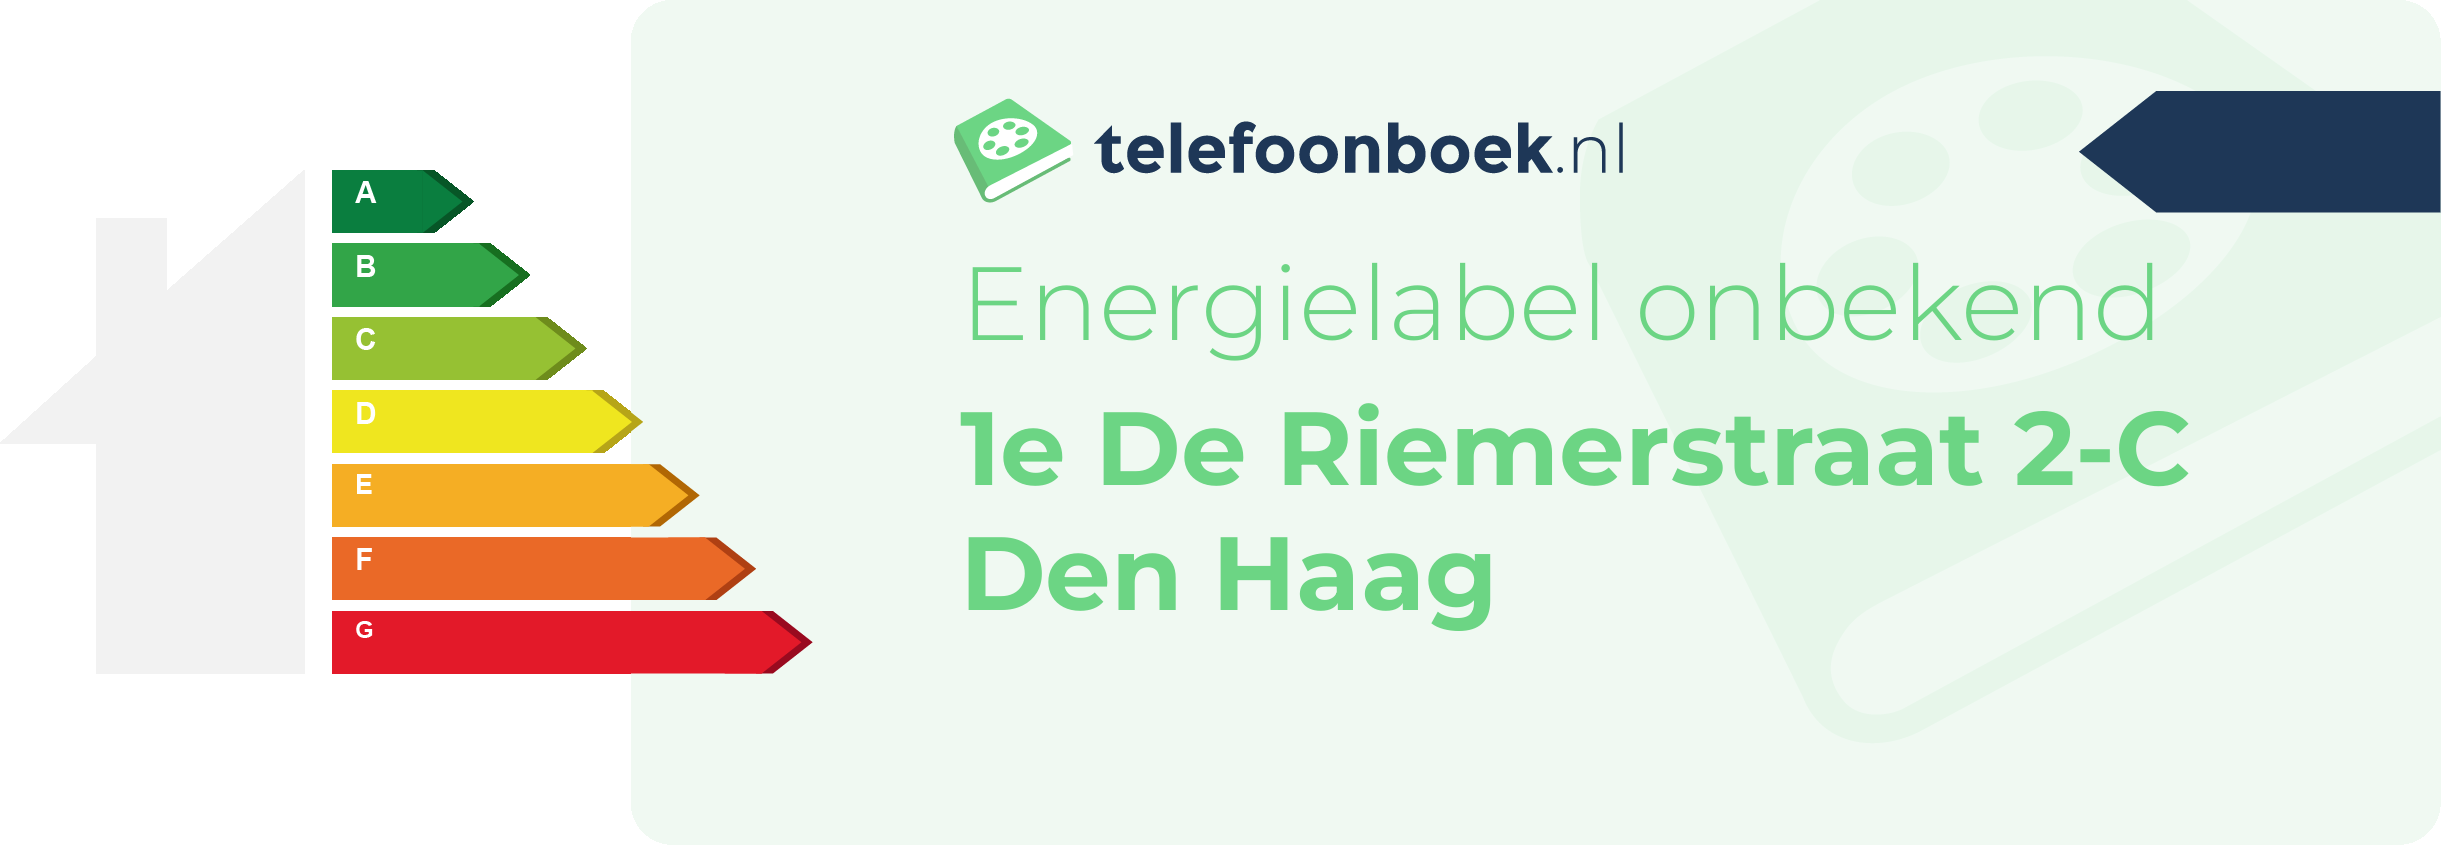 Energielabel 1e De Riemerstraat 2-C Den Haag